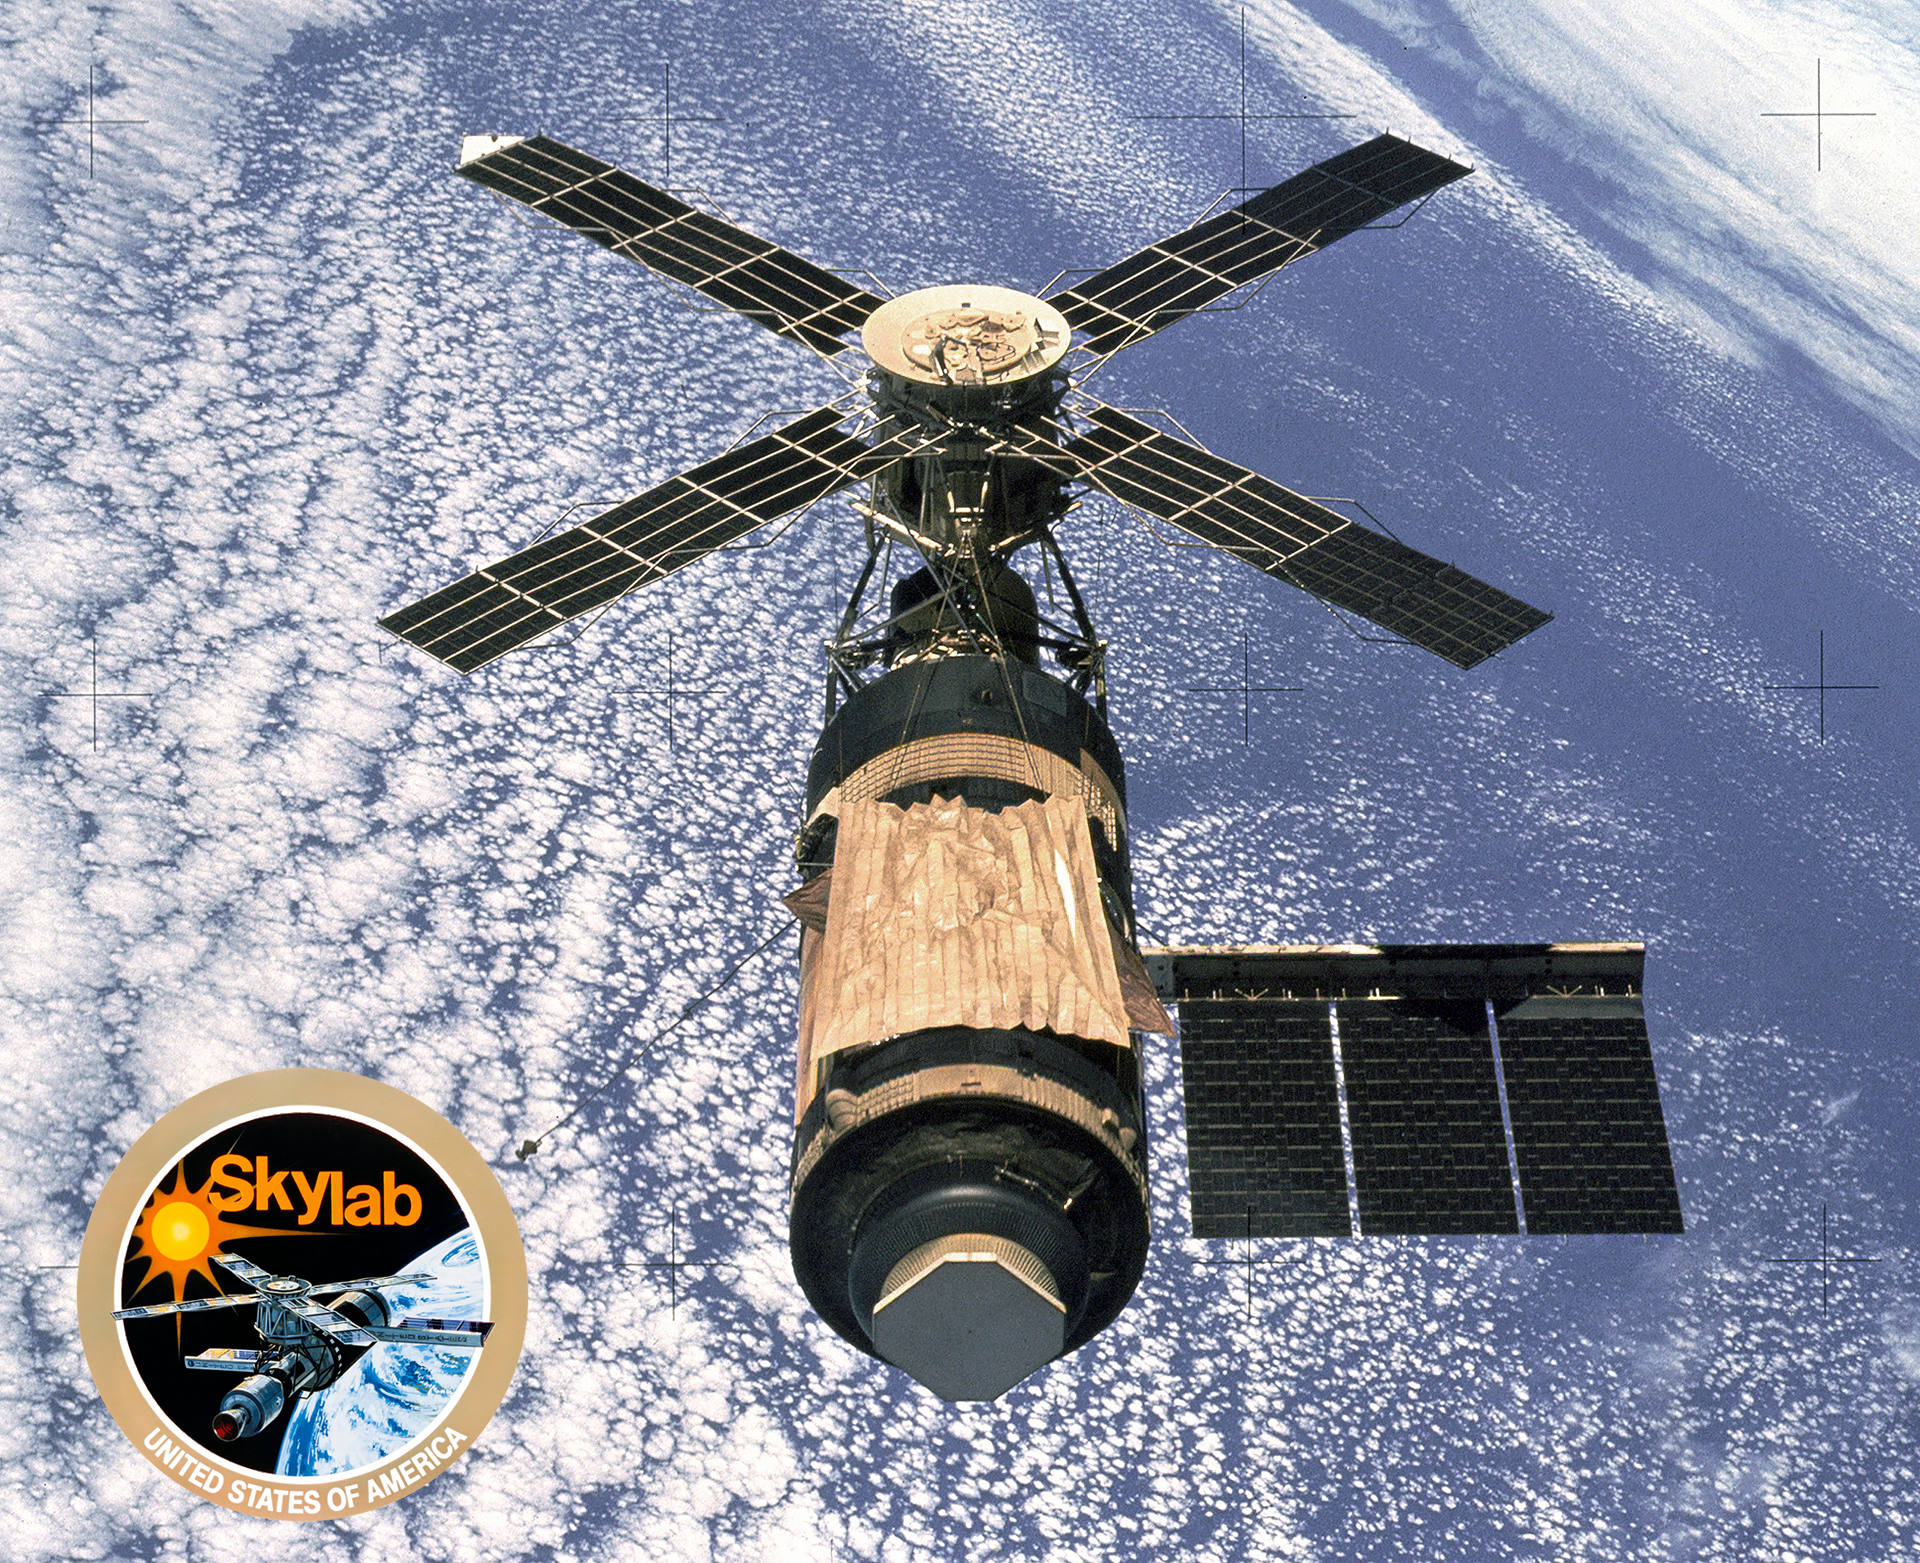 1920x1563px-Skylab-vWA24